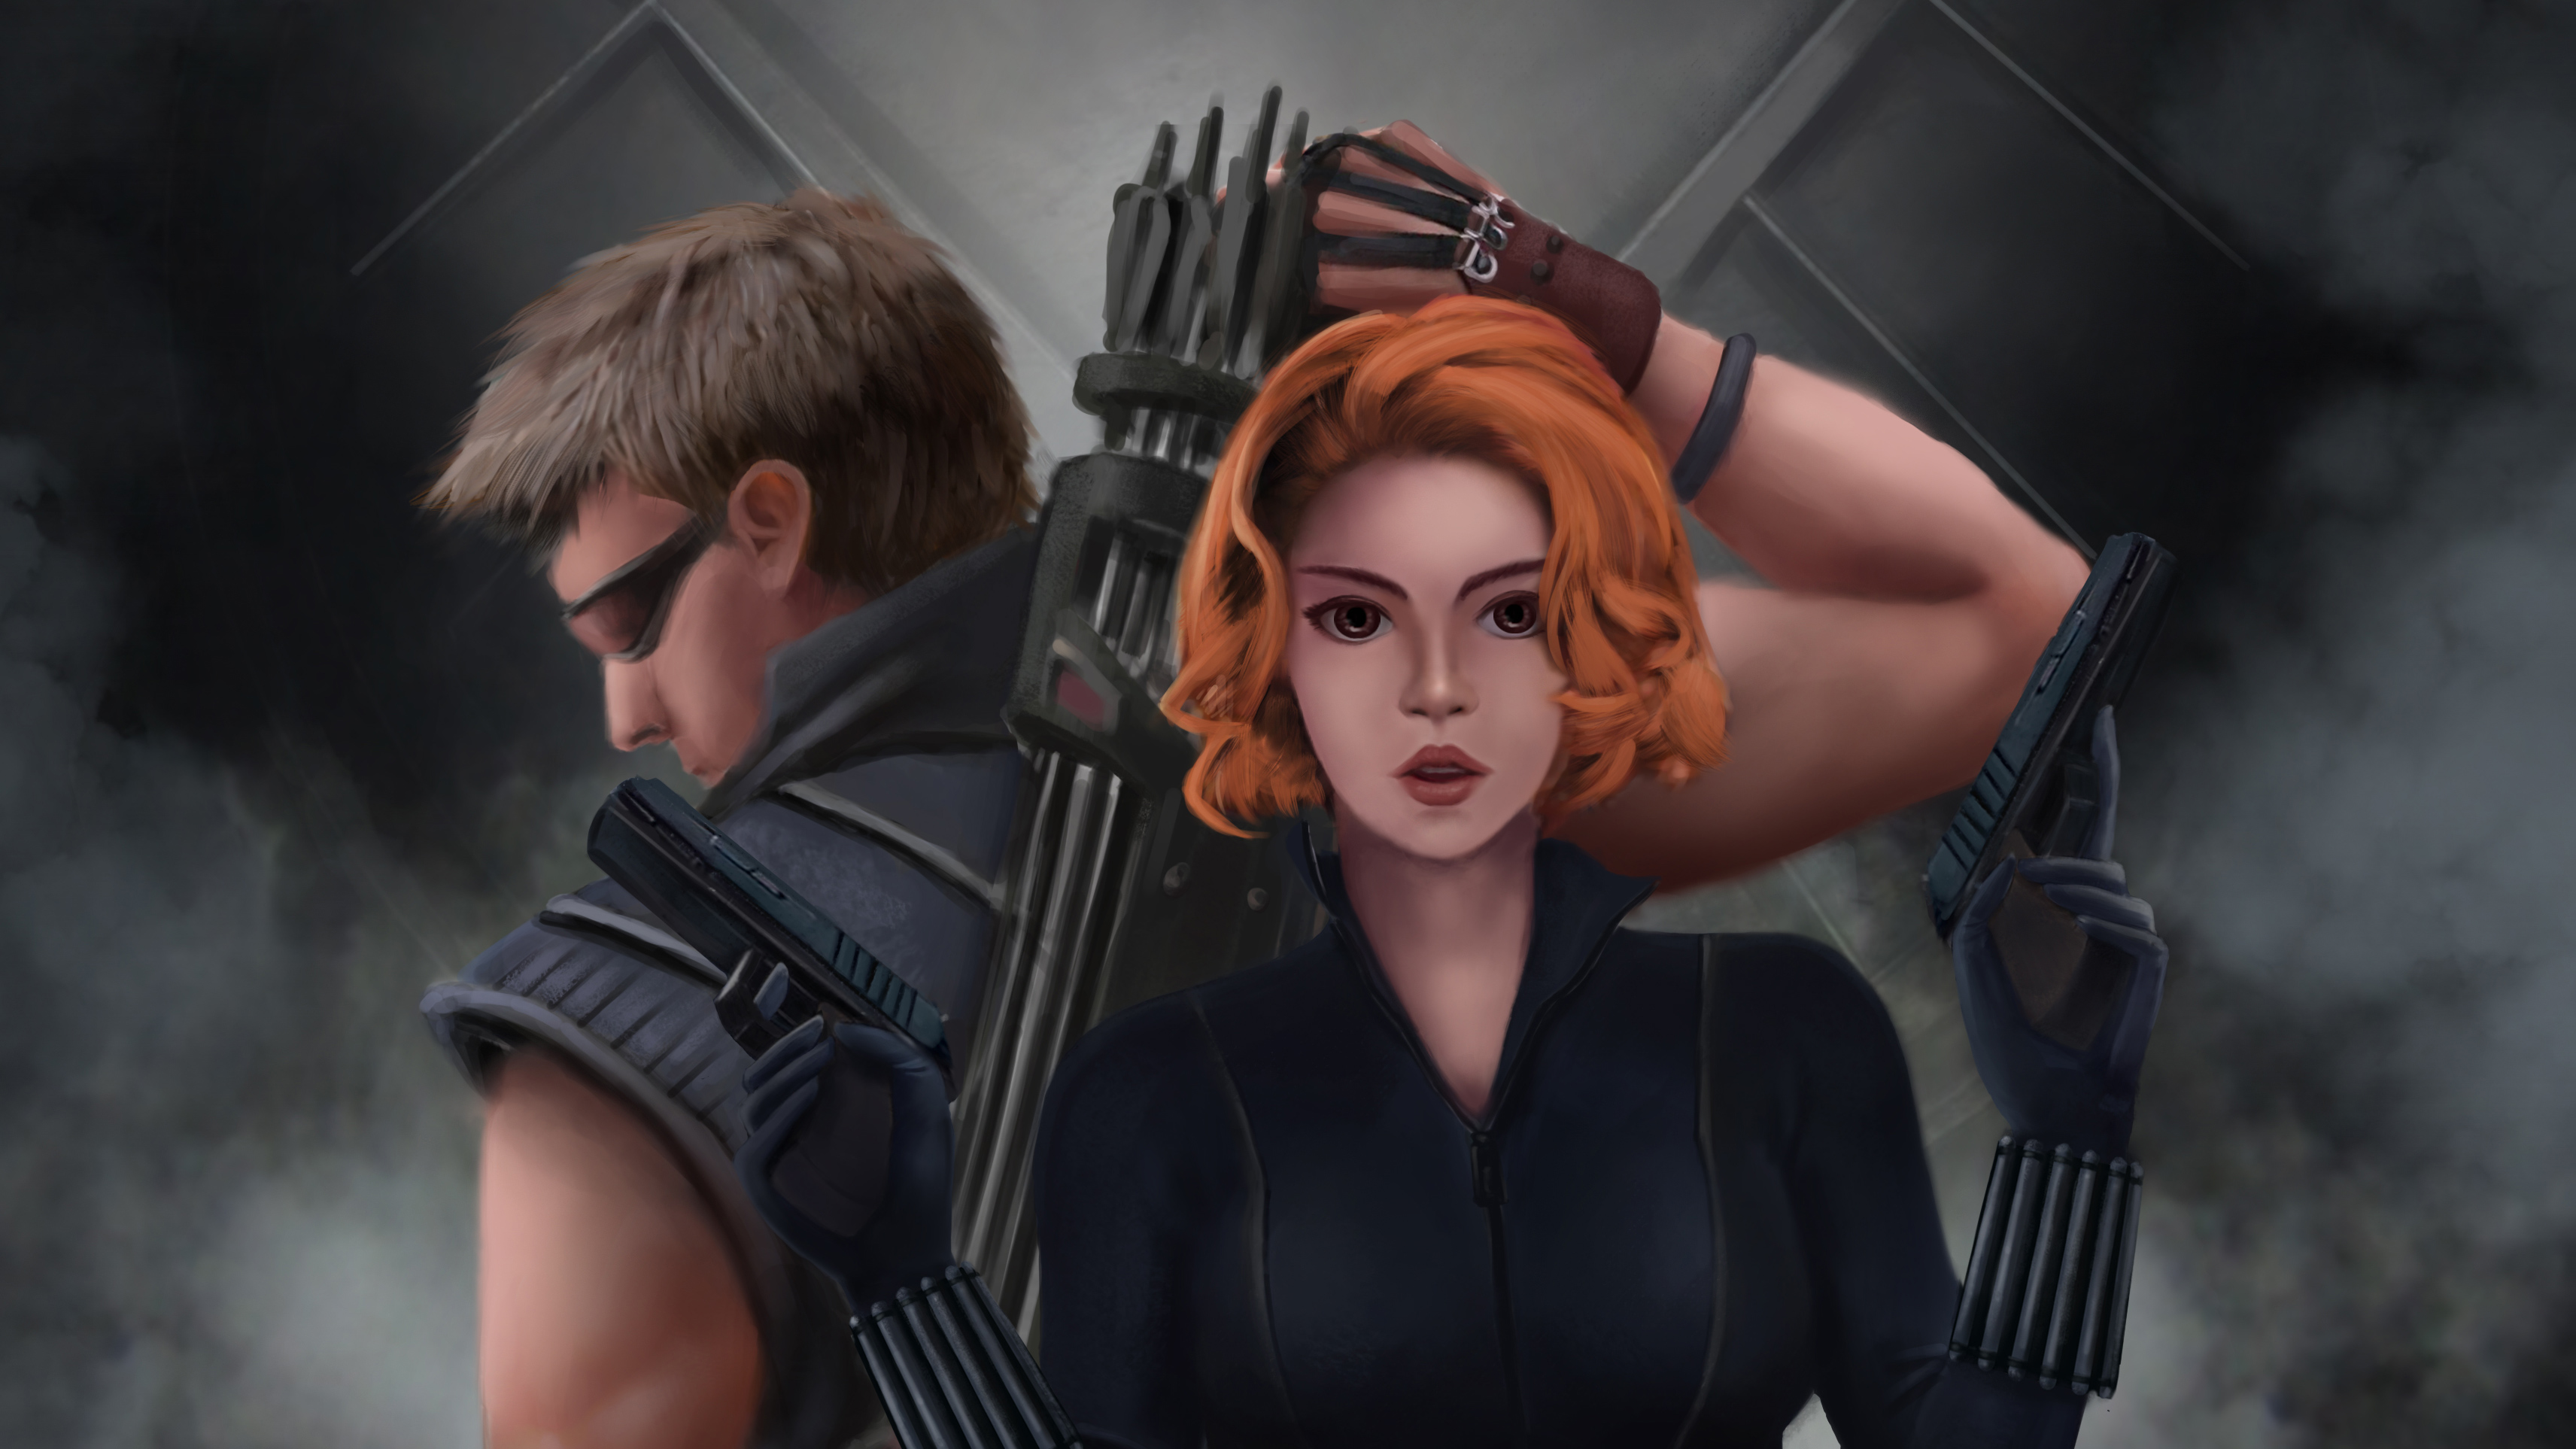 Black Widow And Hawkeye, HD Superheroes, 4k Wallpapers, Images ...